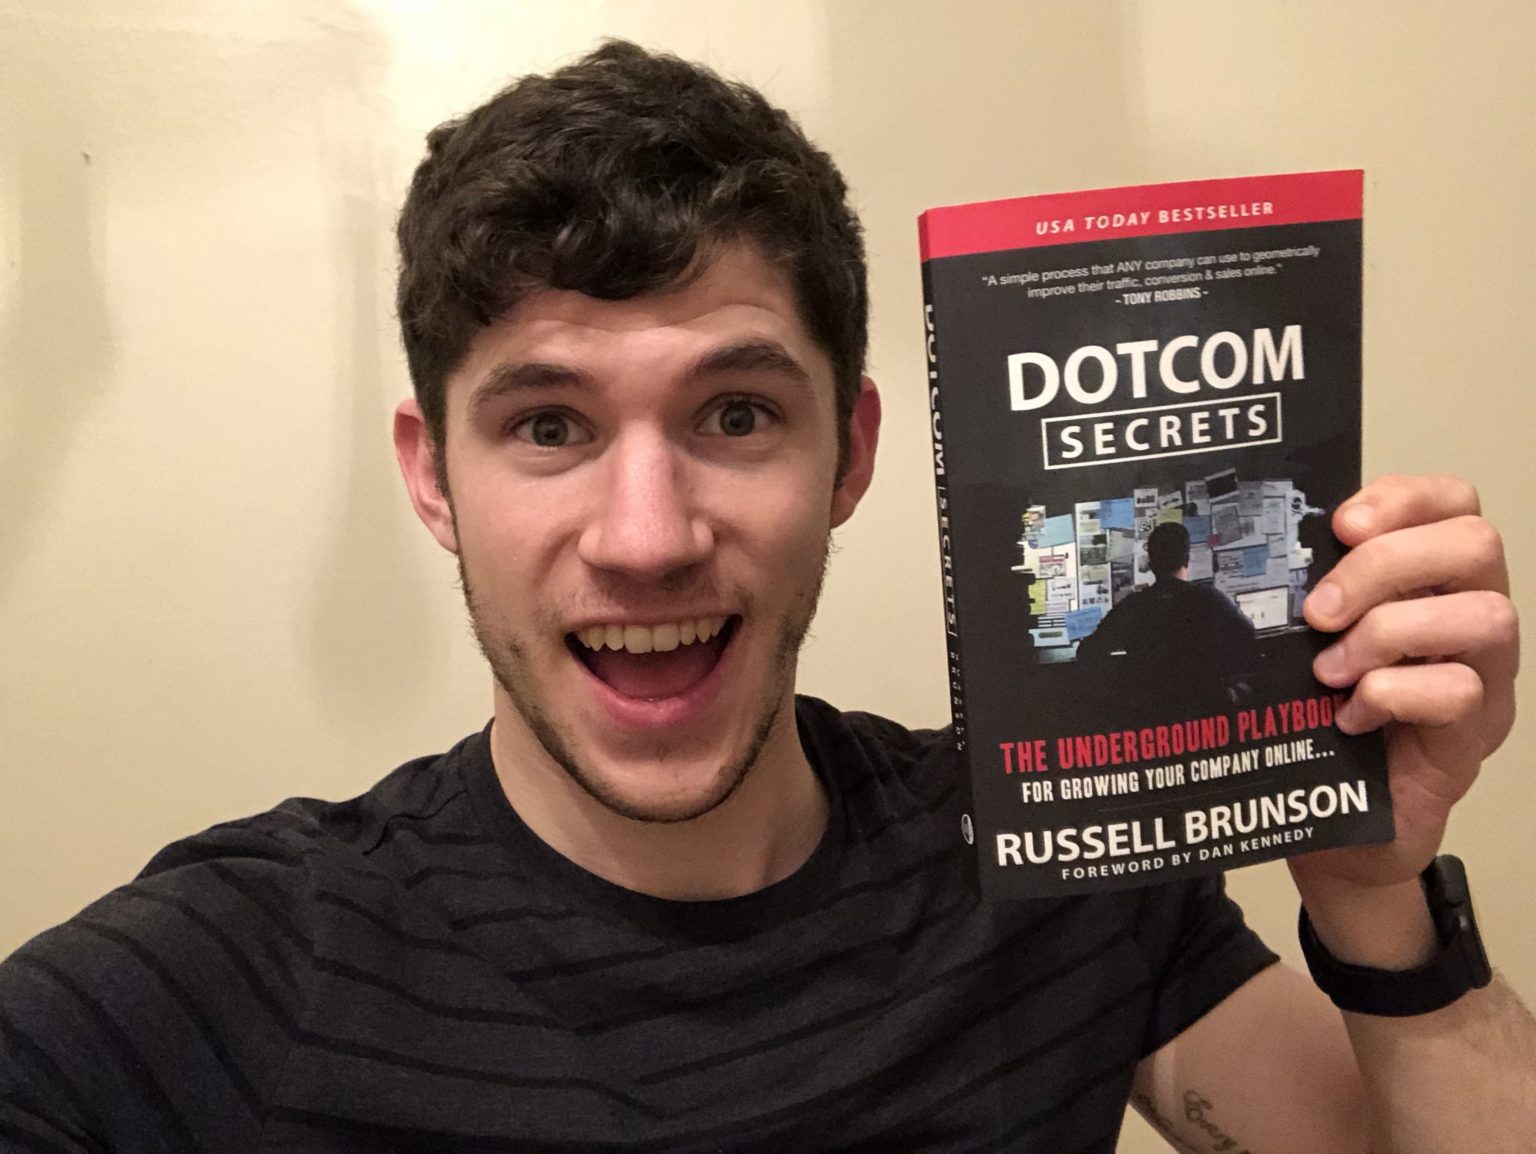 Dotcom secrets book review